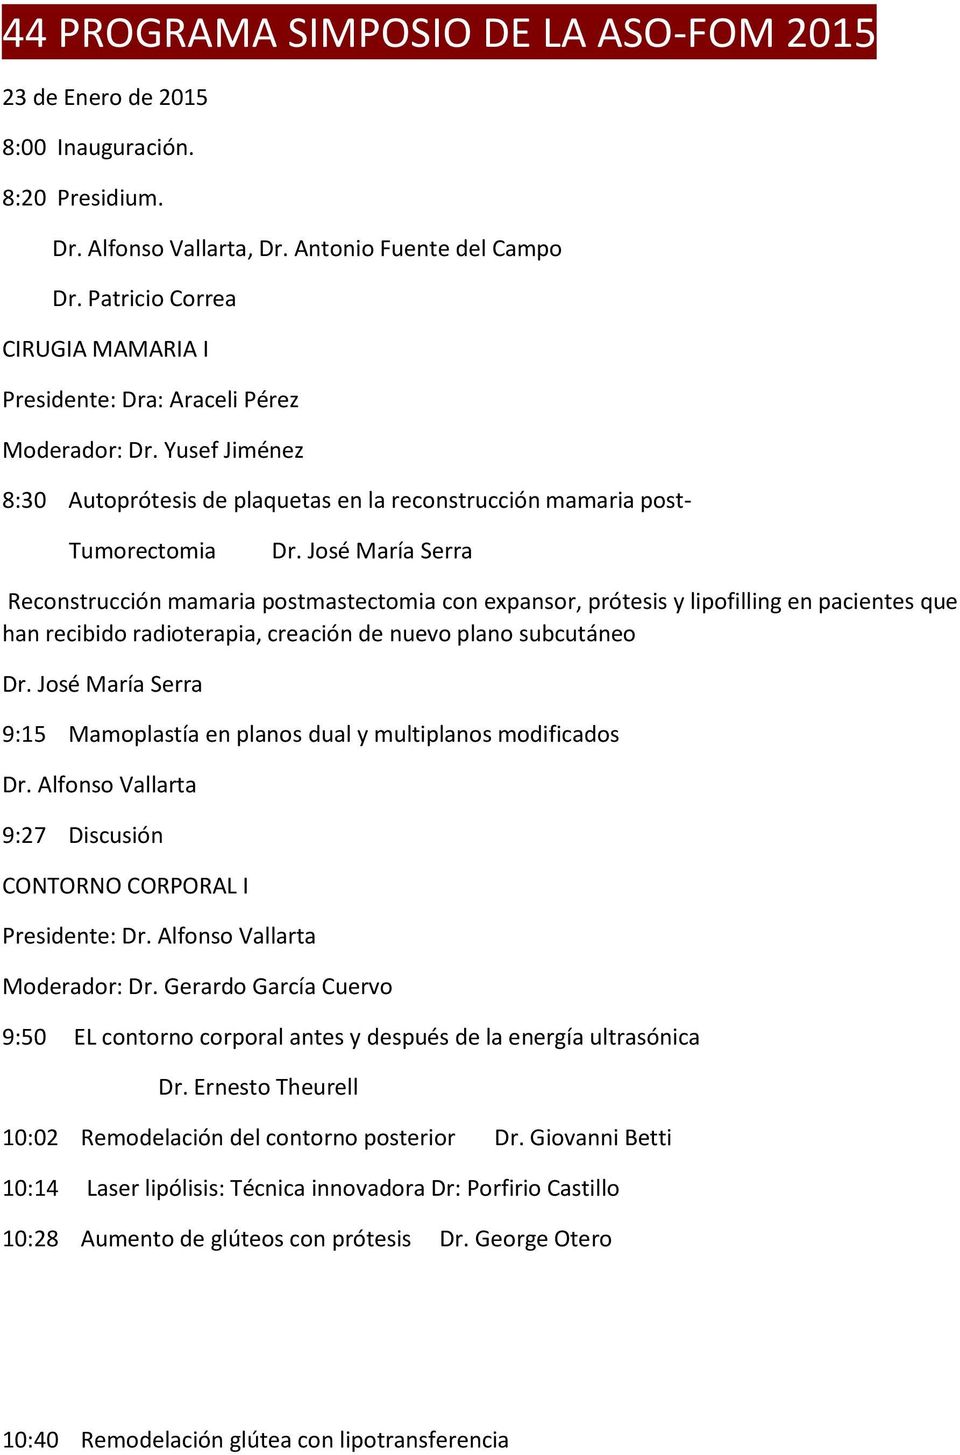 Yusef Jiménez 8:30 Autoprótesis de plaquetas en la reconstrucción mamaria post- Tumorectomia Reconstrucción mamaria postmastectomia con expansor, prótesis y lipofilling en pacientes que han recibido